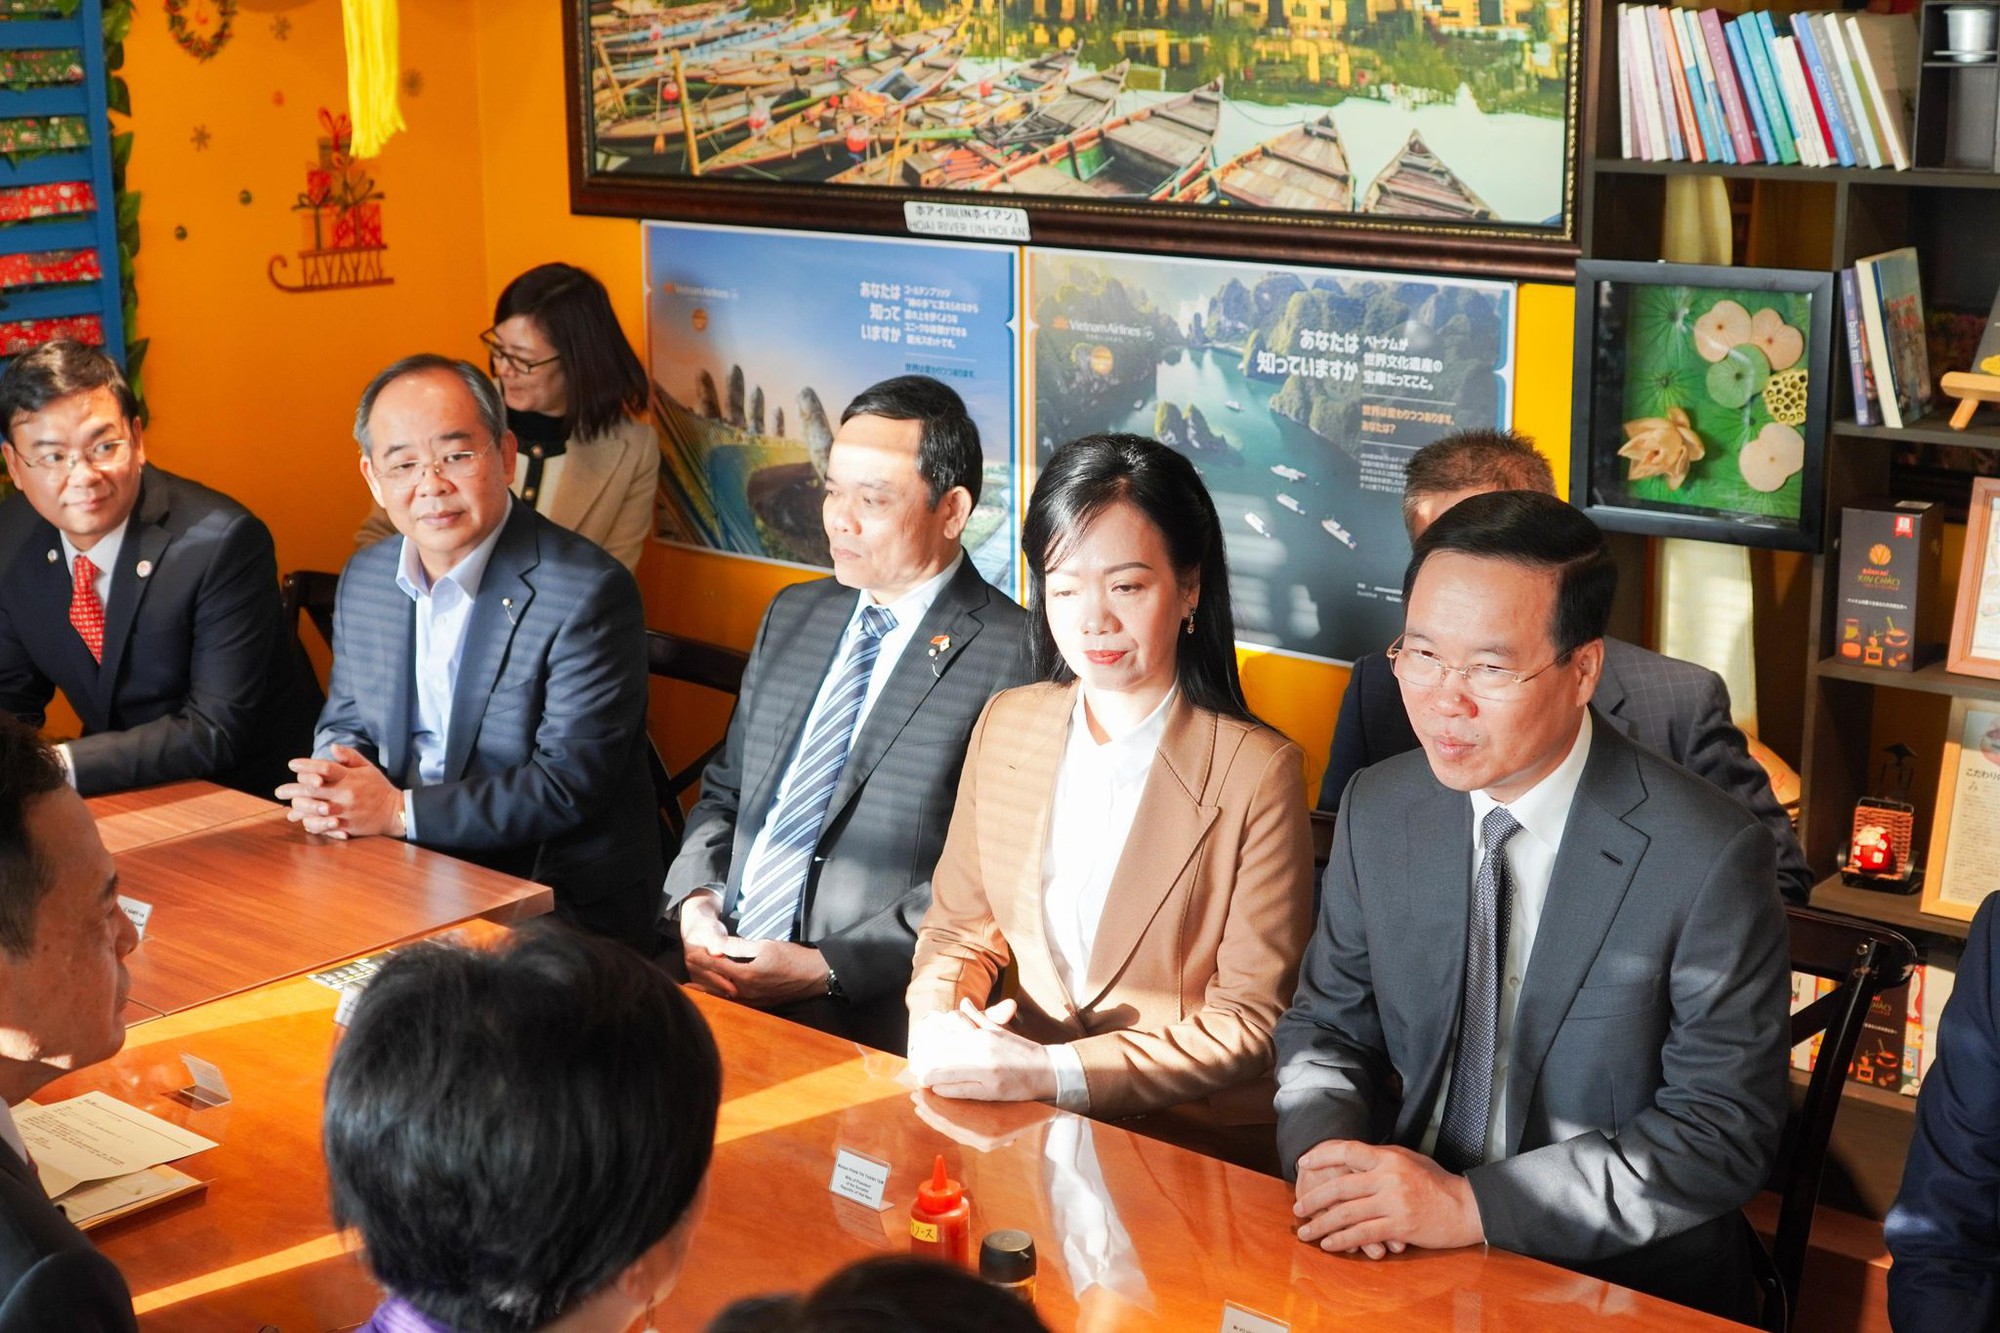 Chủ quán kể chuyện tiếp đón Chủ tịch nước, Thống đốc Tokyo ăn bánh mì Việt Nam - Ảnh 6.